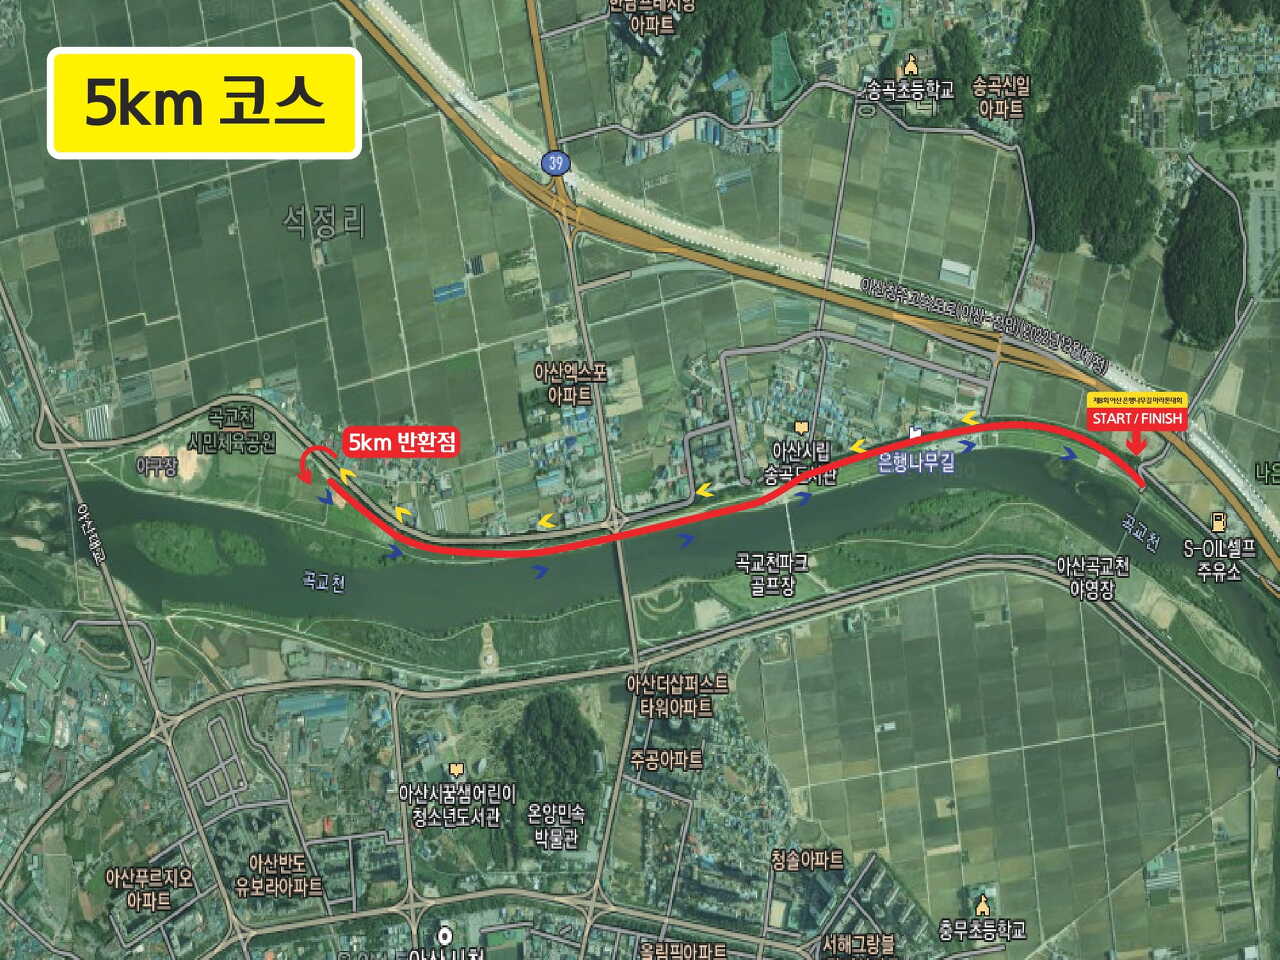 제9회 아산 은행나무길 전국 마라톤 대회 코스 (5km)